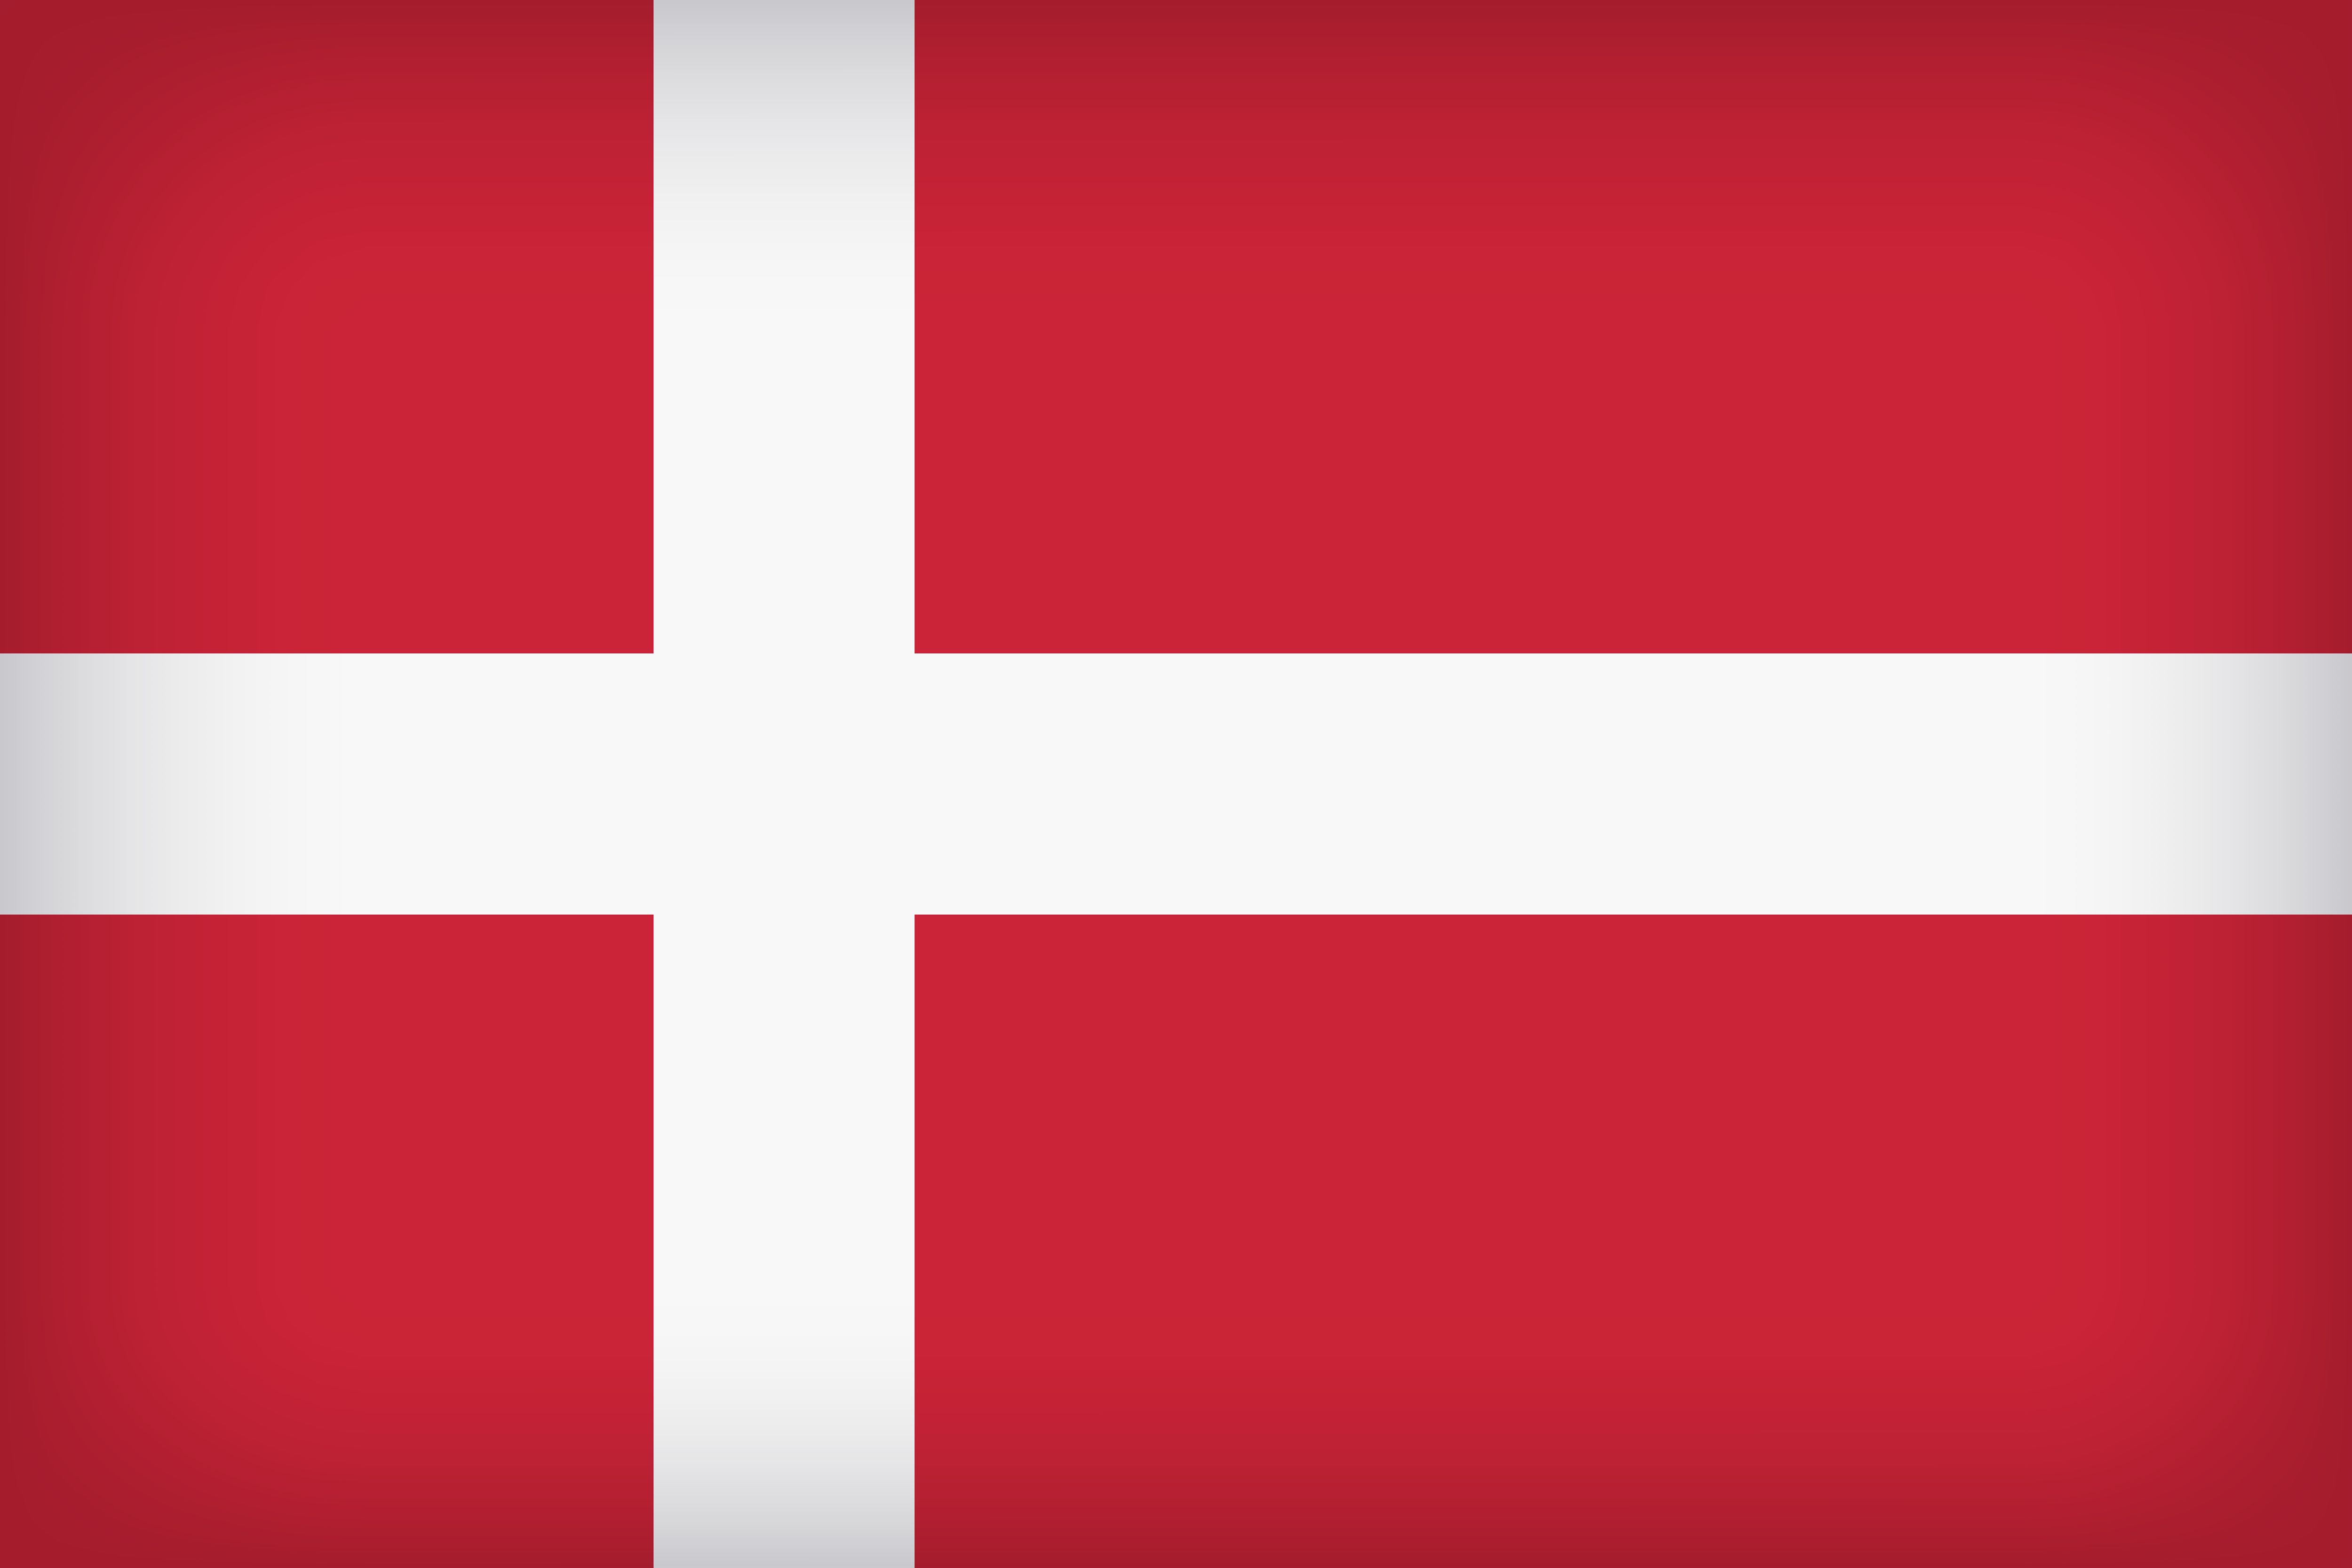 Скачать обои Датский Флаг на телефон бесплатно